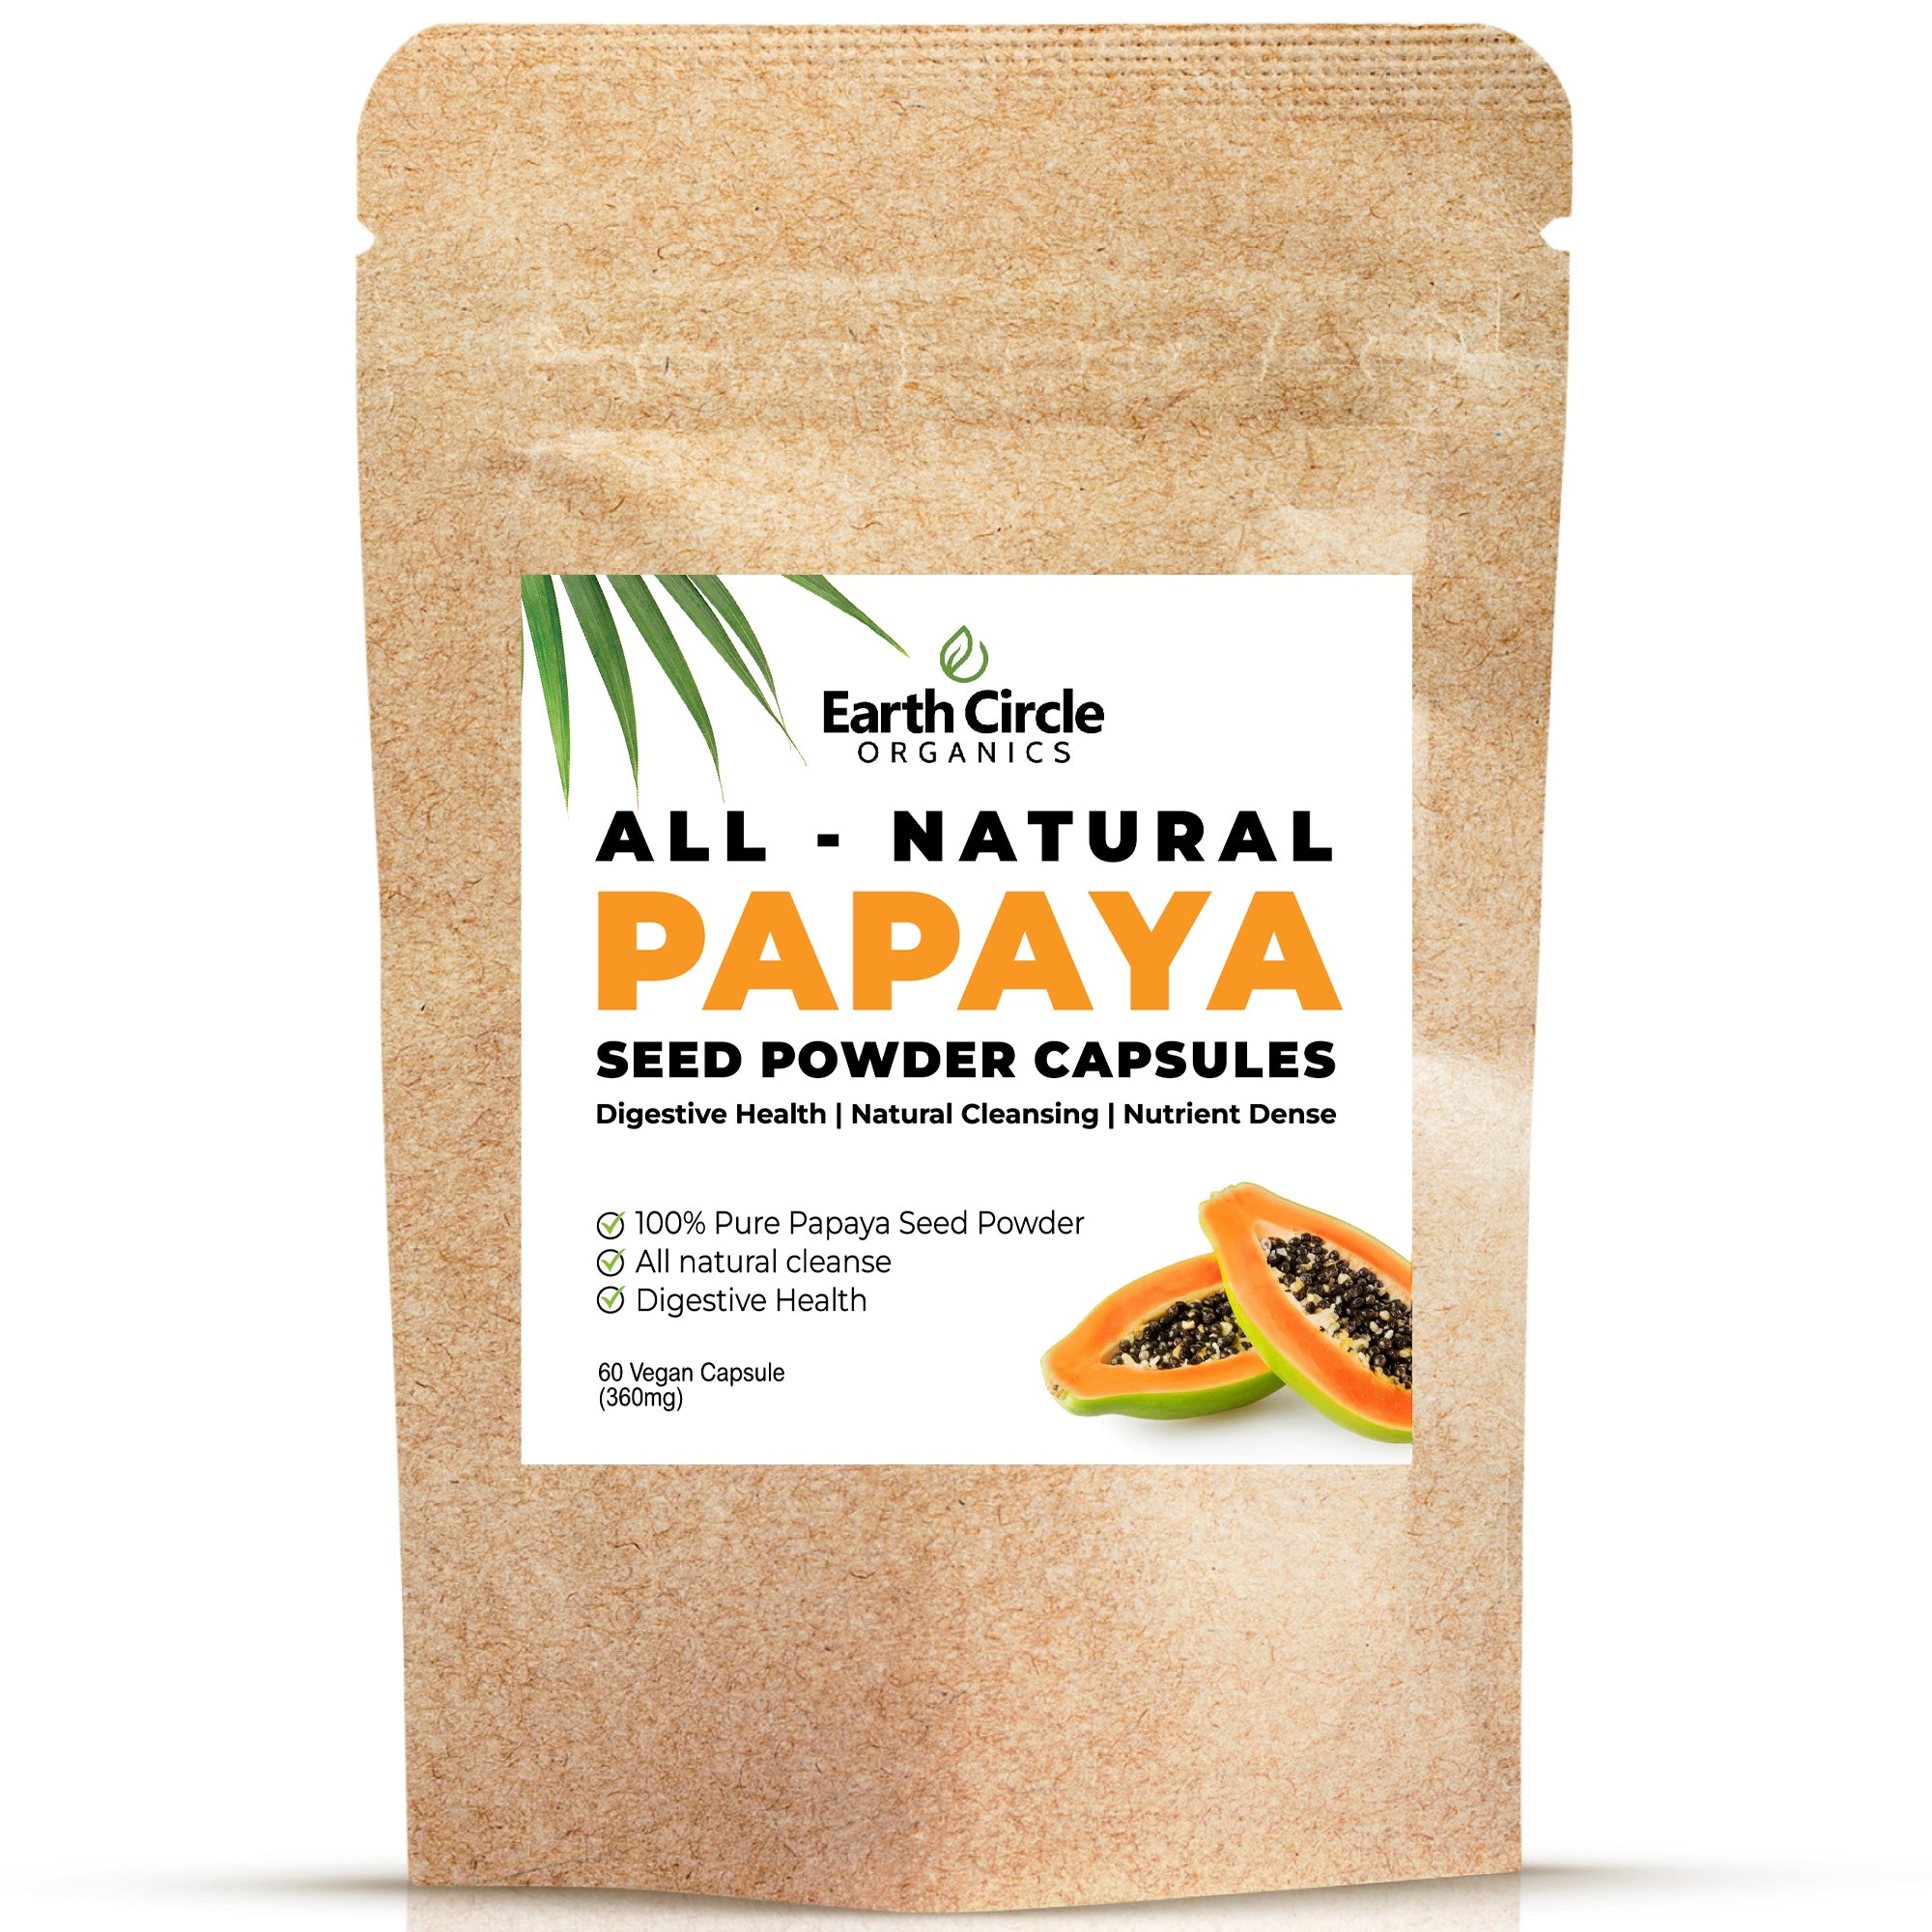 Papaya Seed Powder Capsules- 360mg/ serving, 60 Vegan Capsules